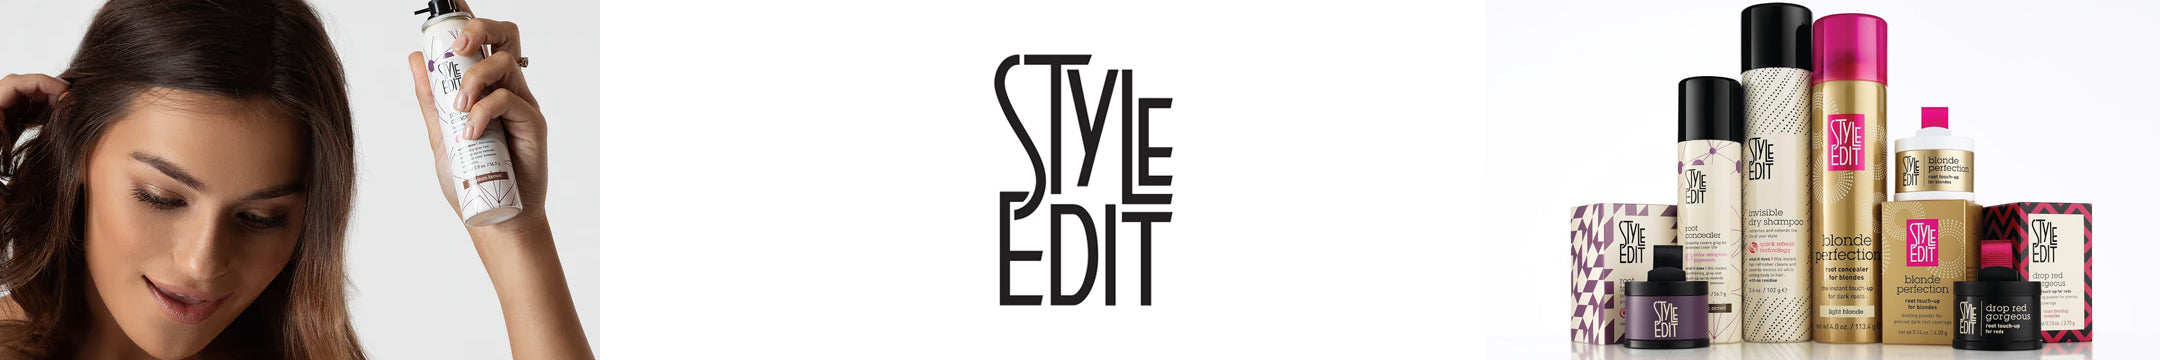 Style Edit on Sale